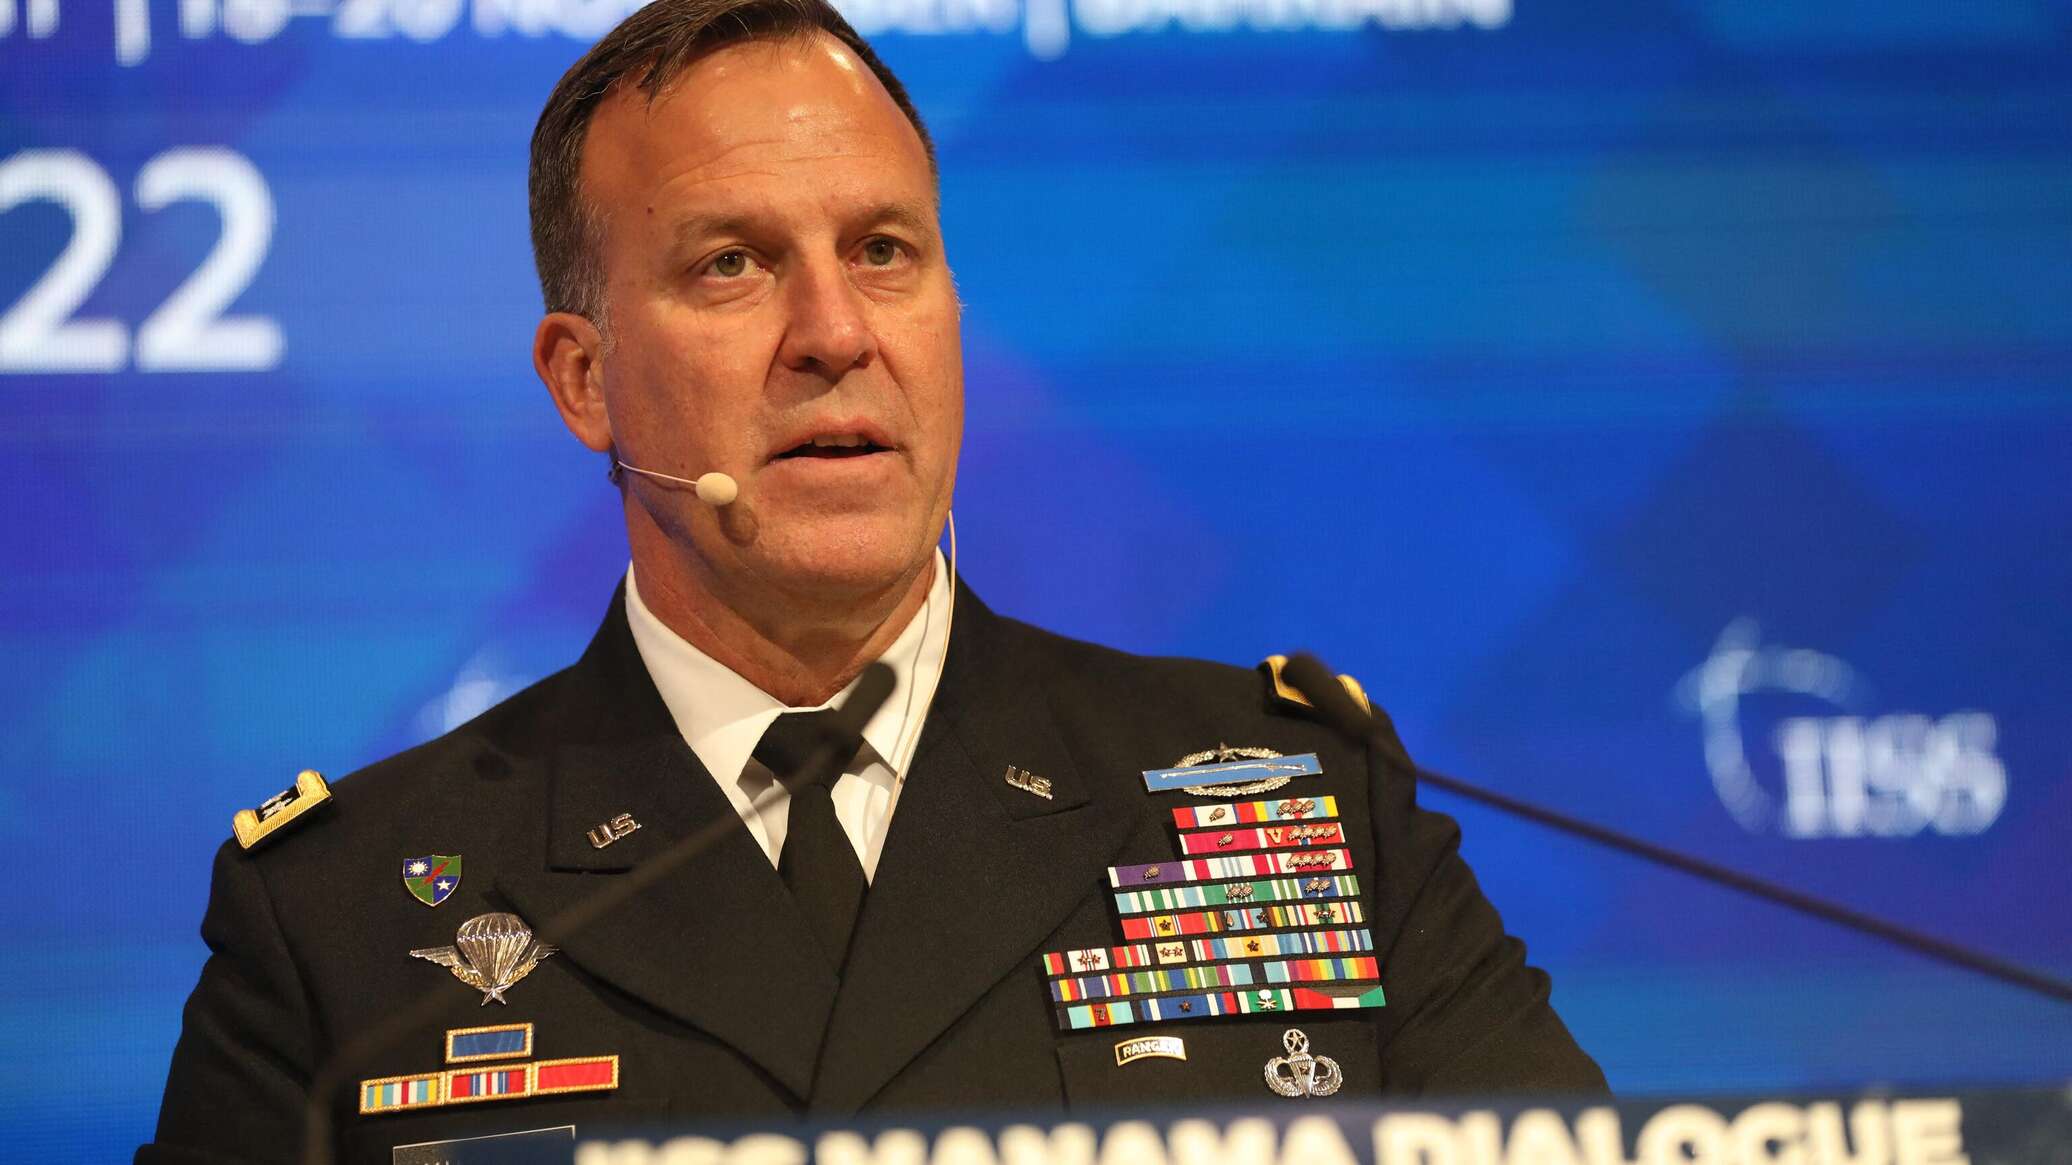 إعلام: قائد القيادة المركزية الأمريكية حذر سرا من أن العمليات العسكرية لا تردع هجمات "أنصار الله"